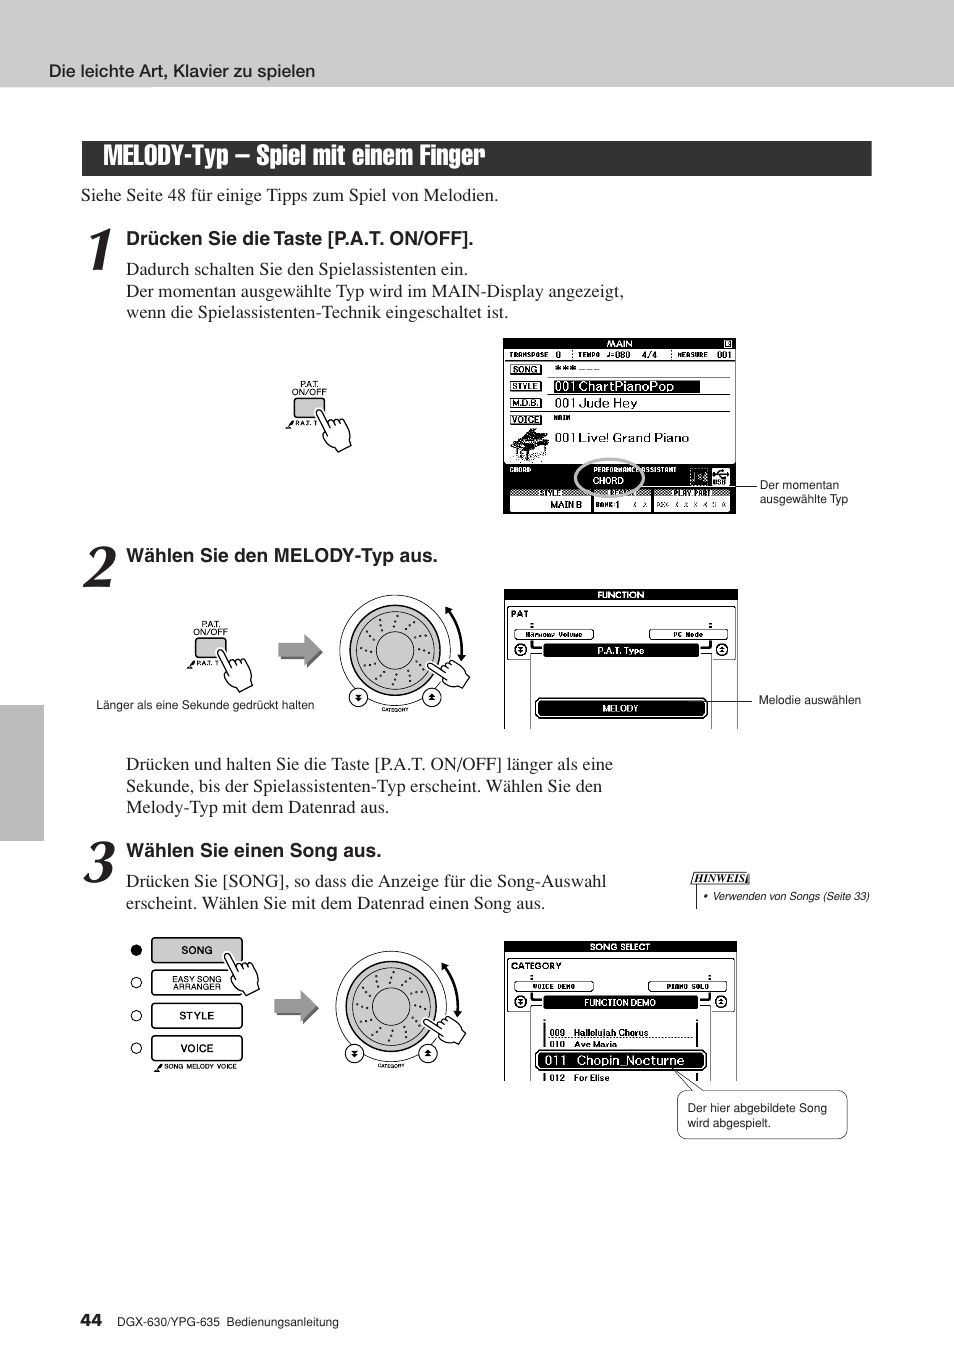 Melody-typ - spiel mit einem finger, Melody-typ – spiel mit einem finger | Yamaha DGX-630 Benutzerhandbuch | Seite 44 / 160